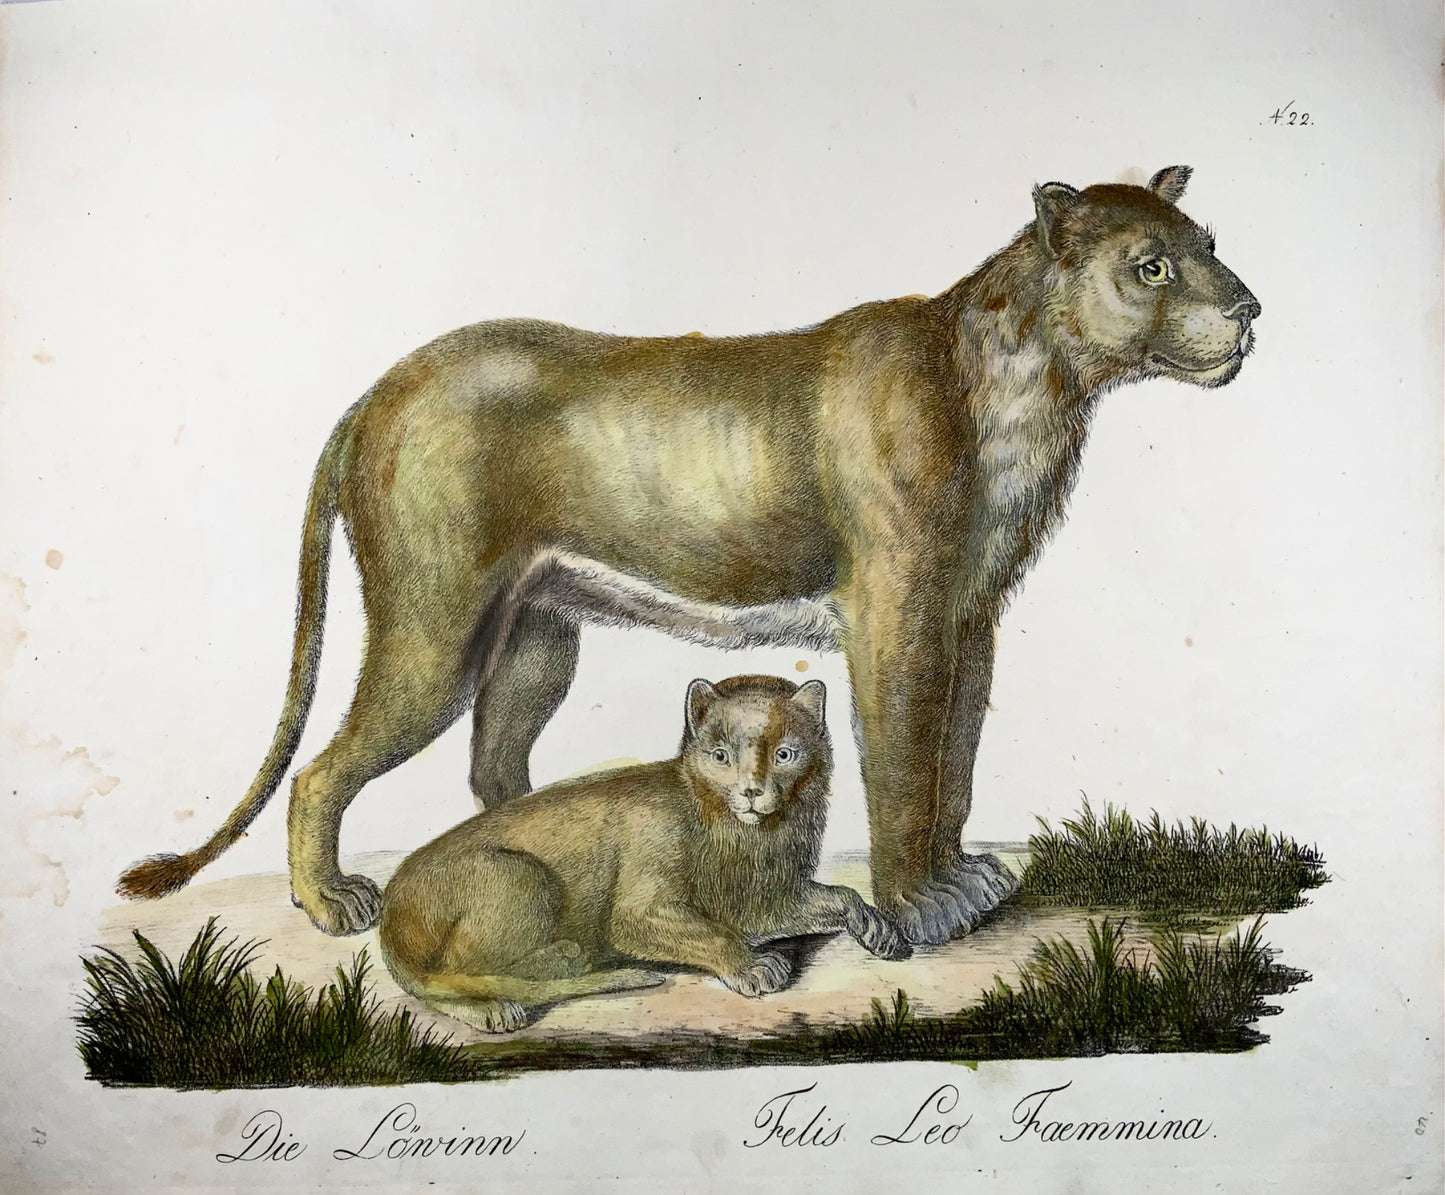 1816 Lionne, Brodtmann, Imp. folio 42,5 cm, incunables de lithographie